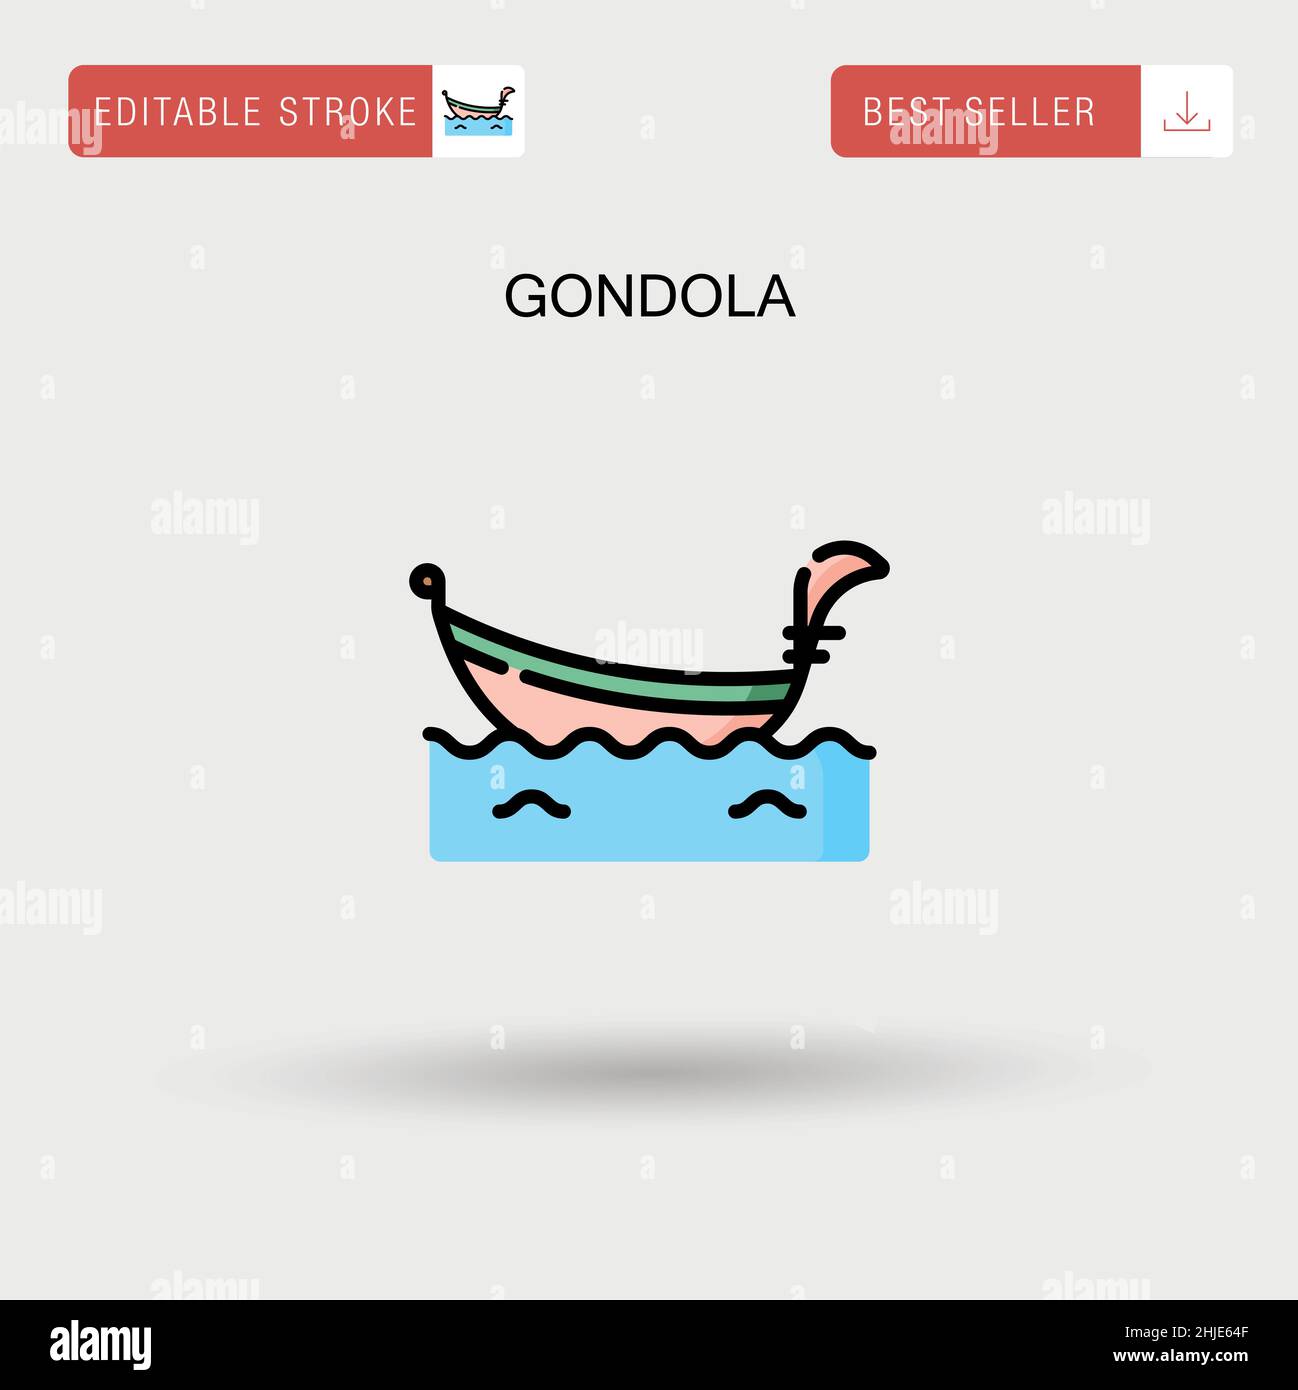 Gondola Simple vector icon. Stock Vector